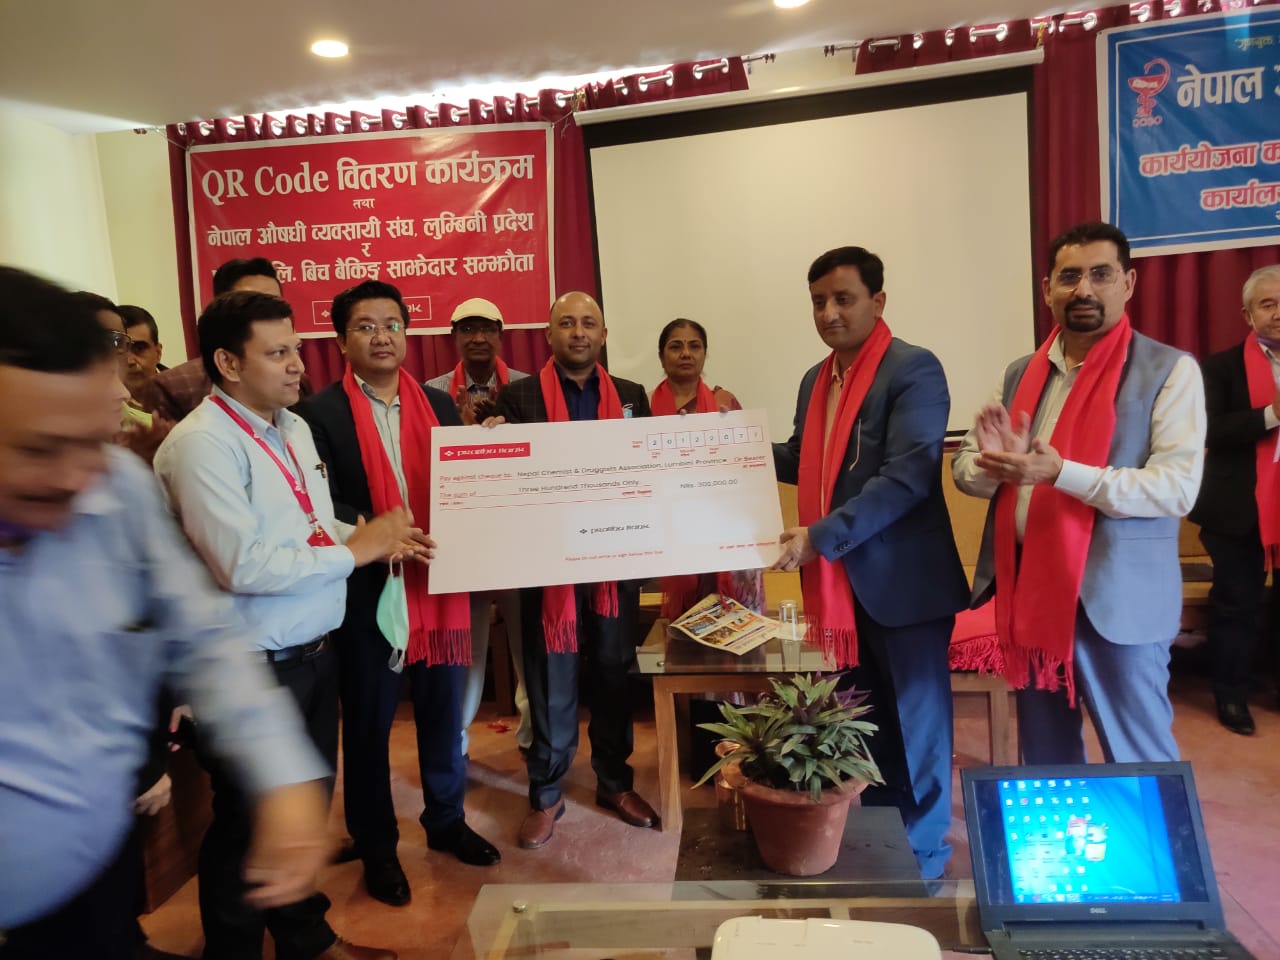 नेपाल औषधी व्यवसायी संघ, लुम्बिनी प्रदेश र प्रभु बैंक  विच बैंकिङ्ग साझेदारीमा सम्झौता